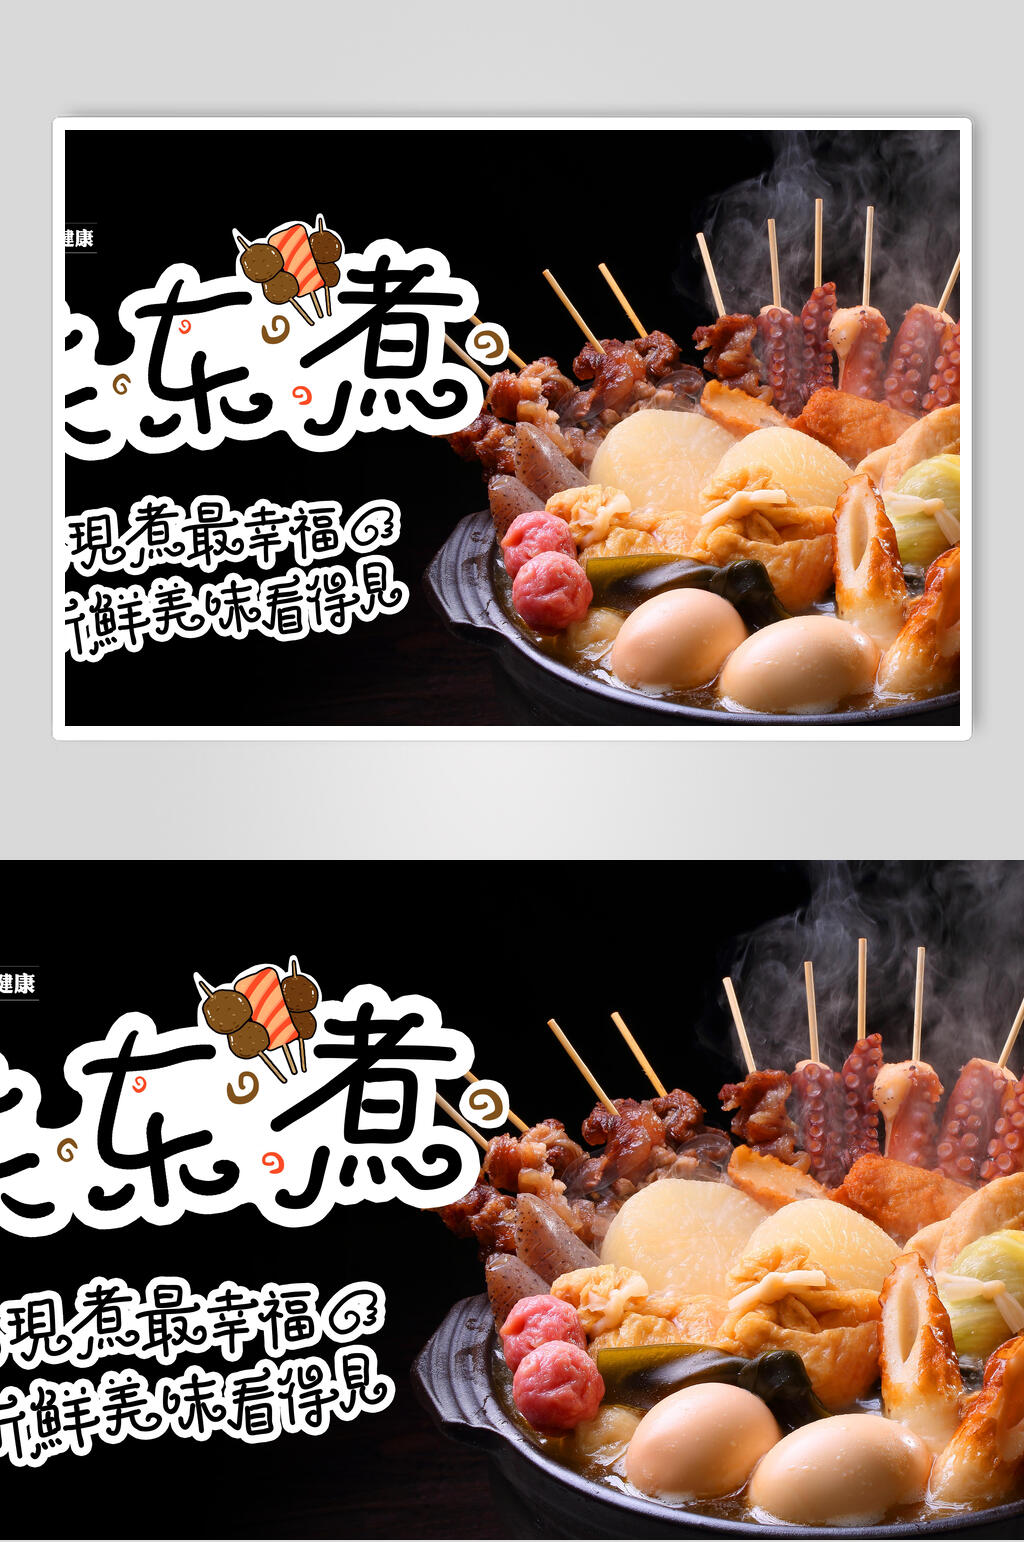 关东煮串串小吃促销宣传海报